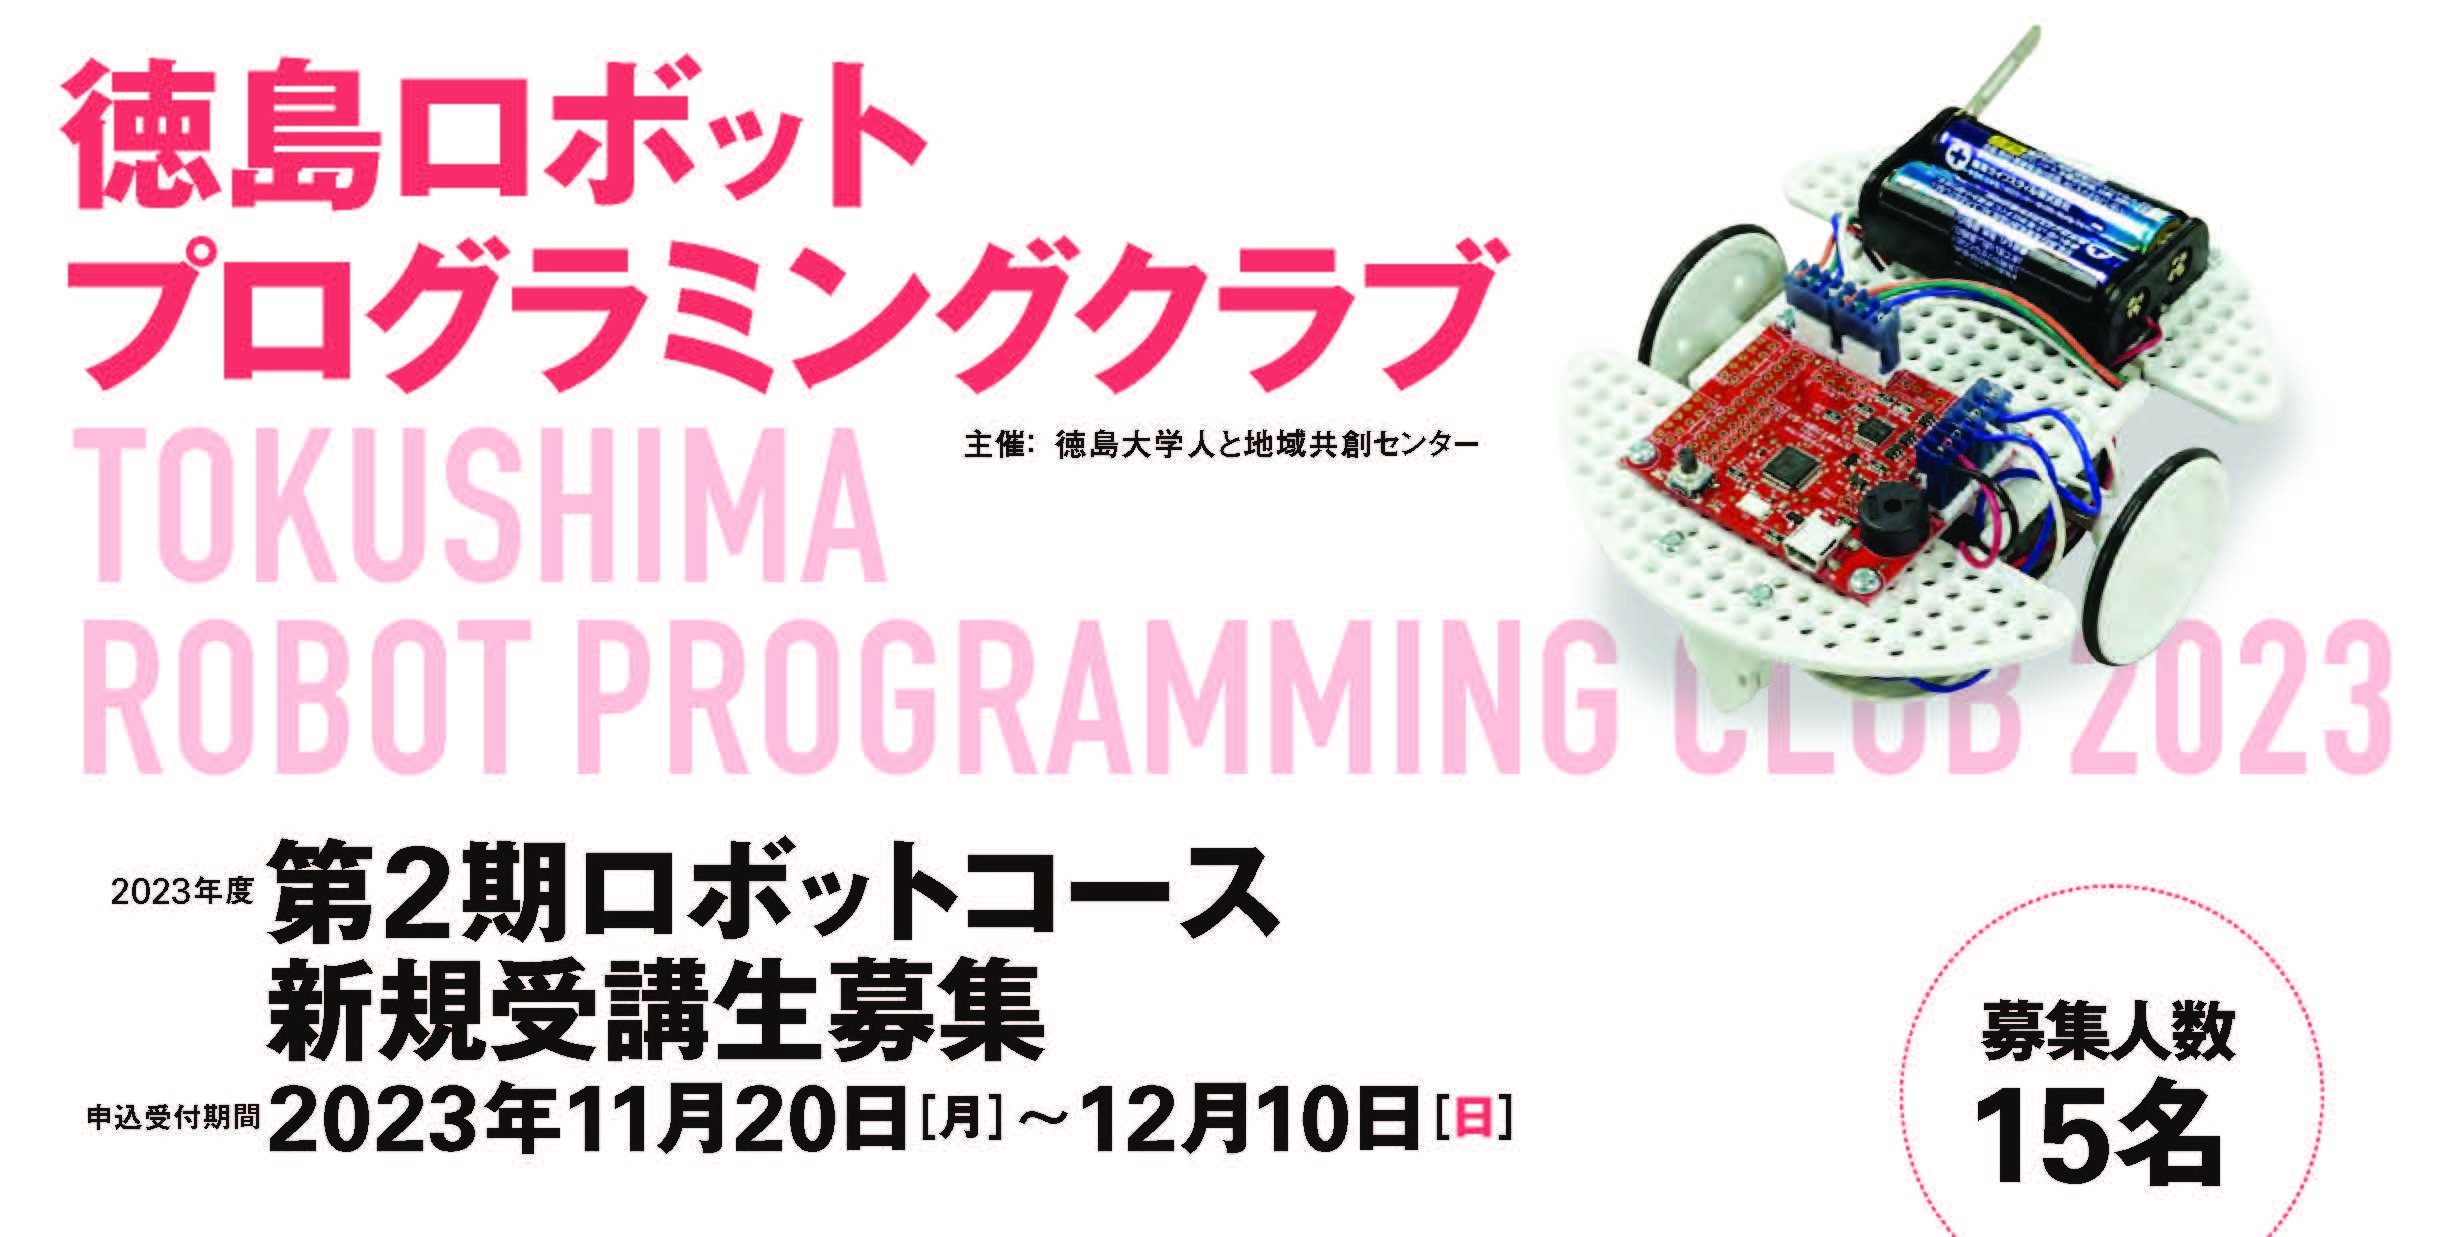 2023年度「徳島ロボットプログラミングクラブ(第2期ロボットコース)」新規受講生募集